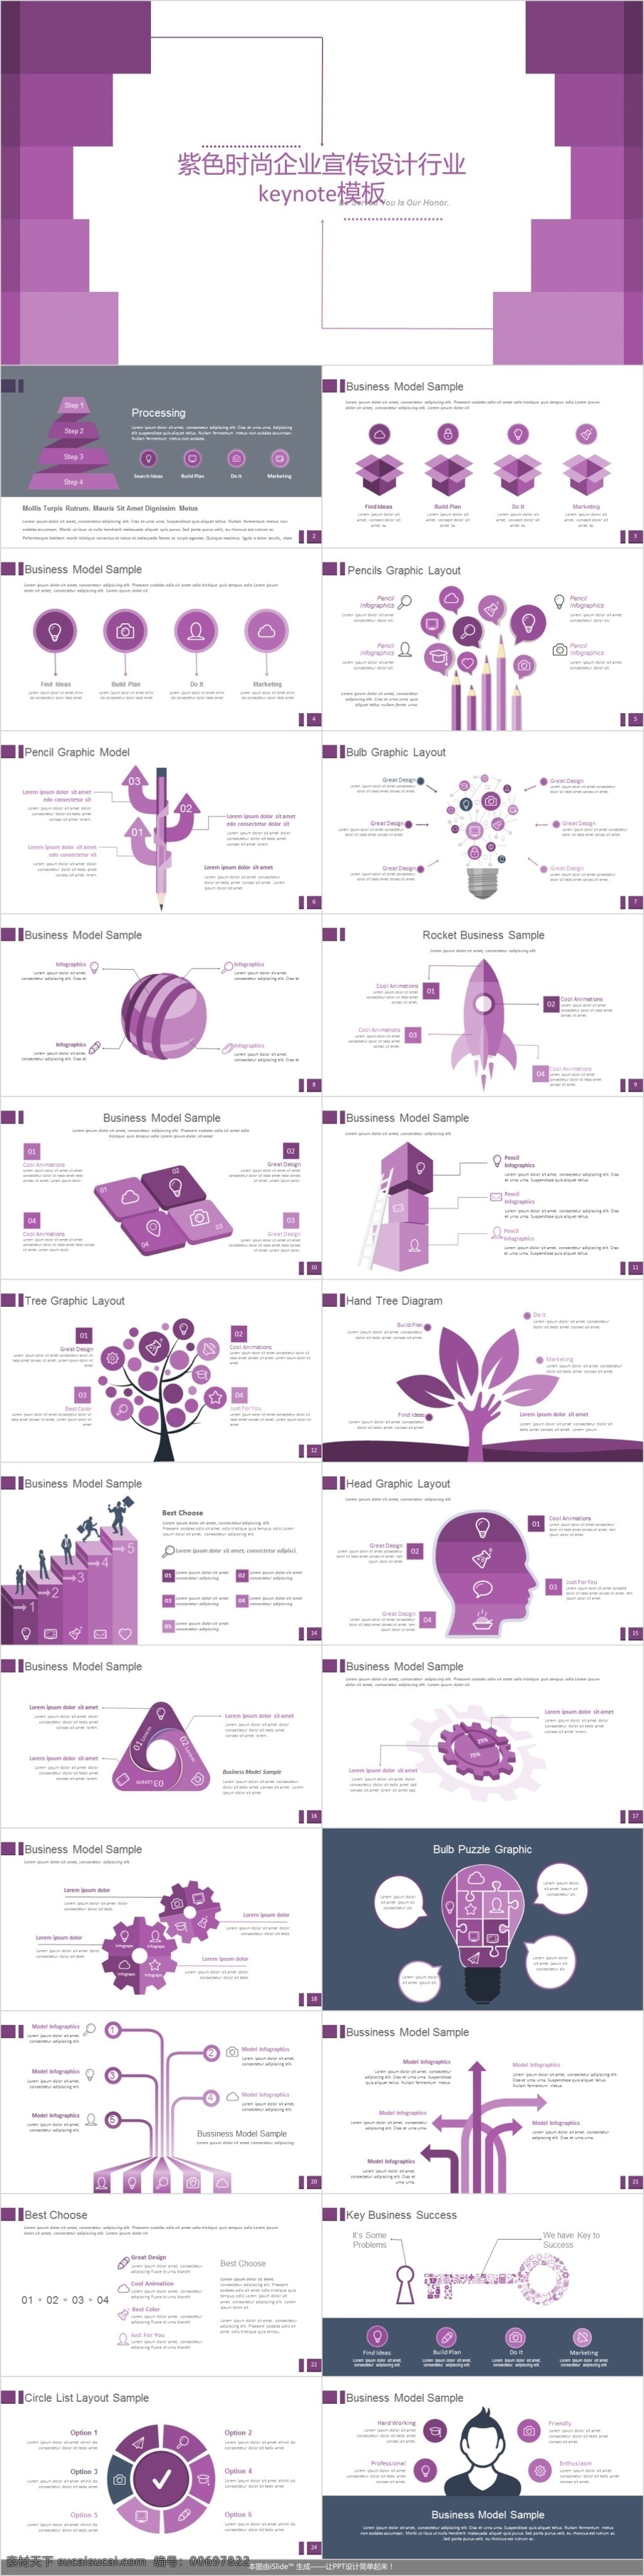 紫色 时尚 企业 宣传 行业 keynote 模板 免费 模板下载 总结模板 总结